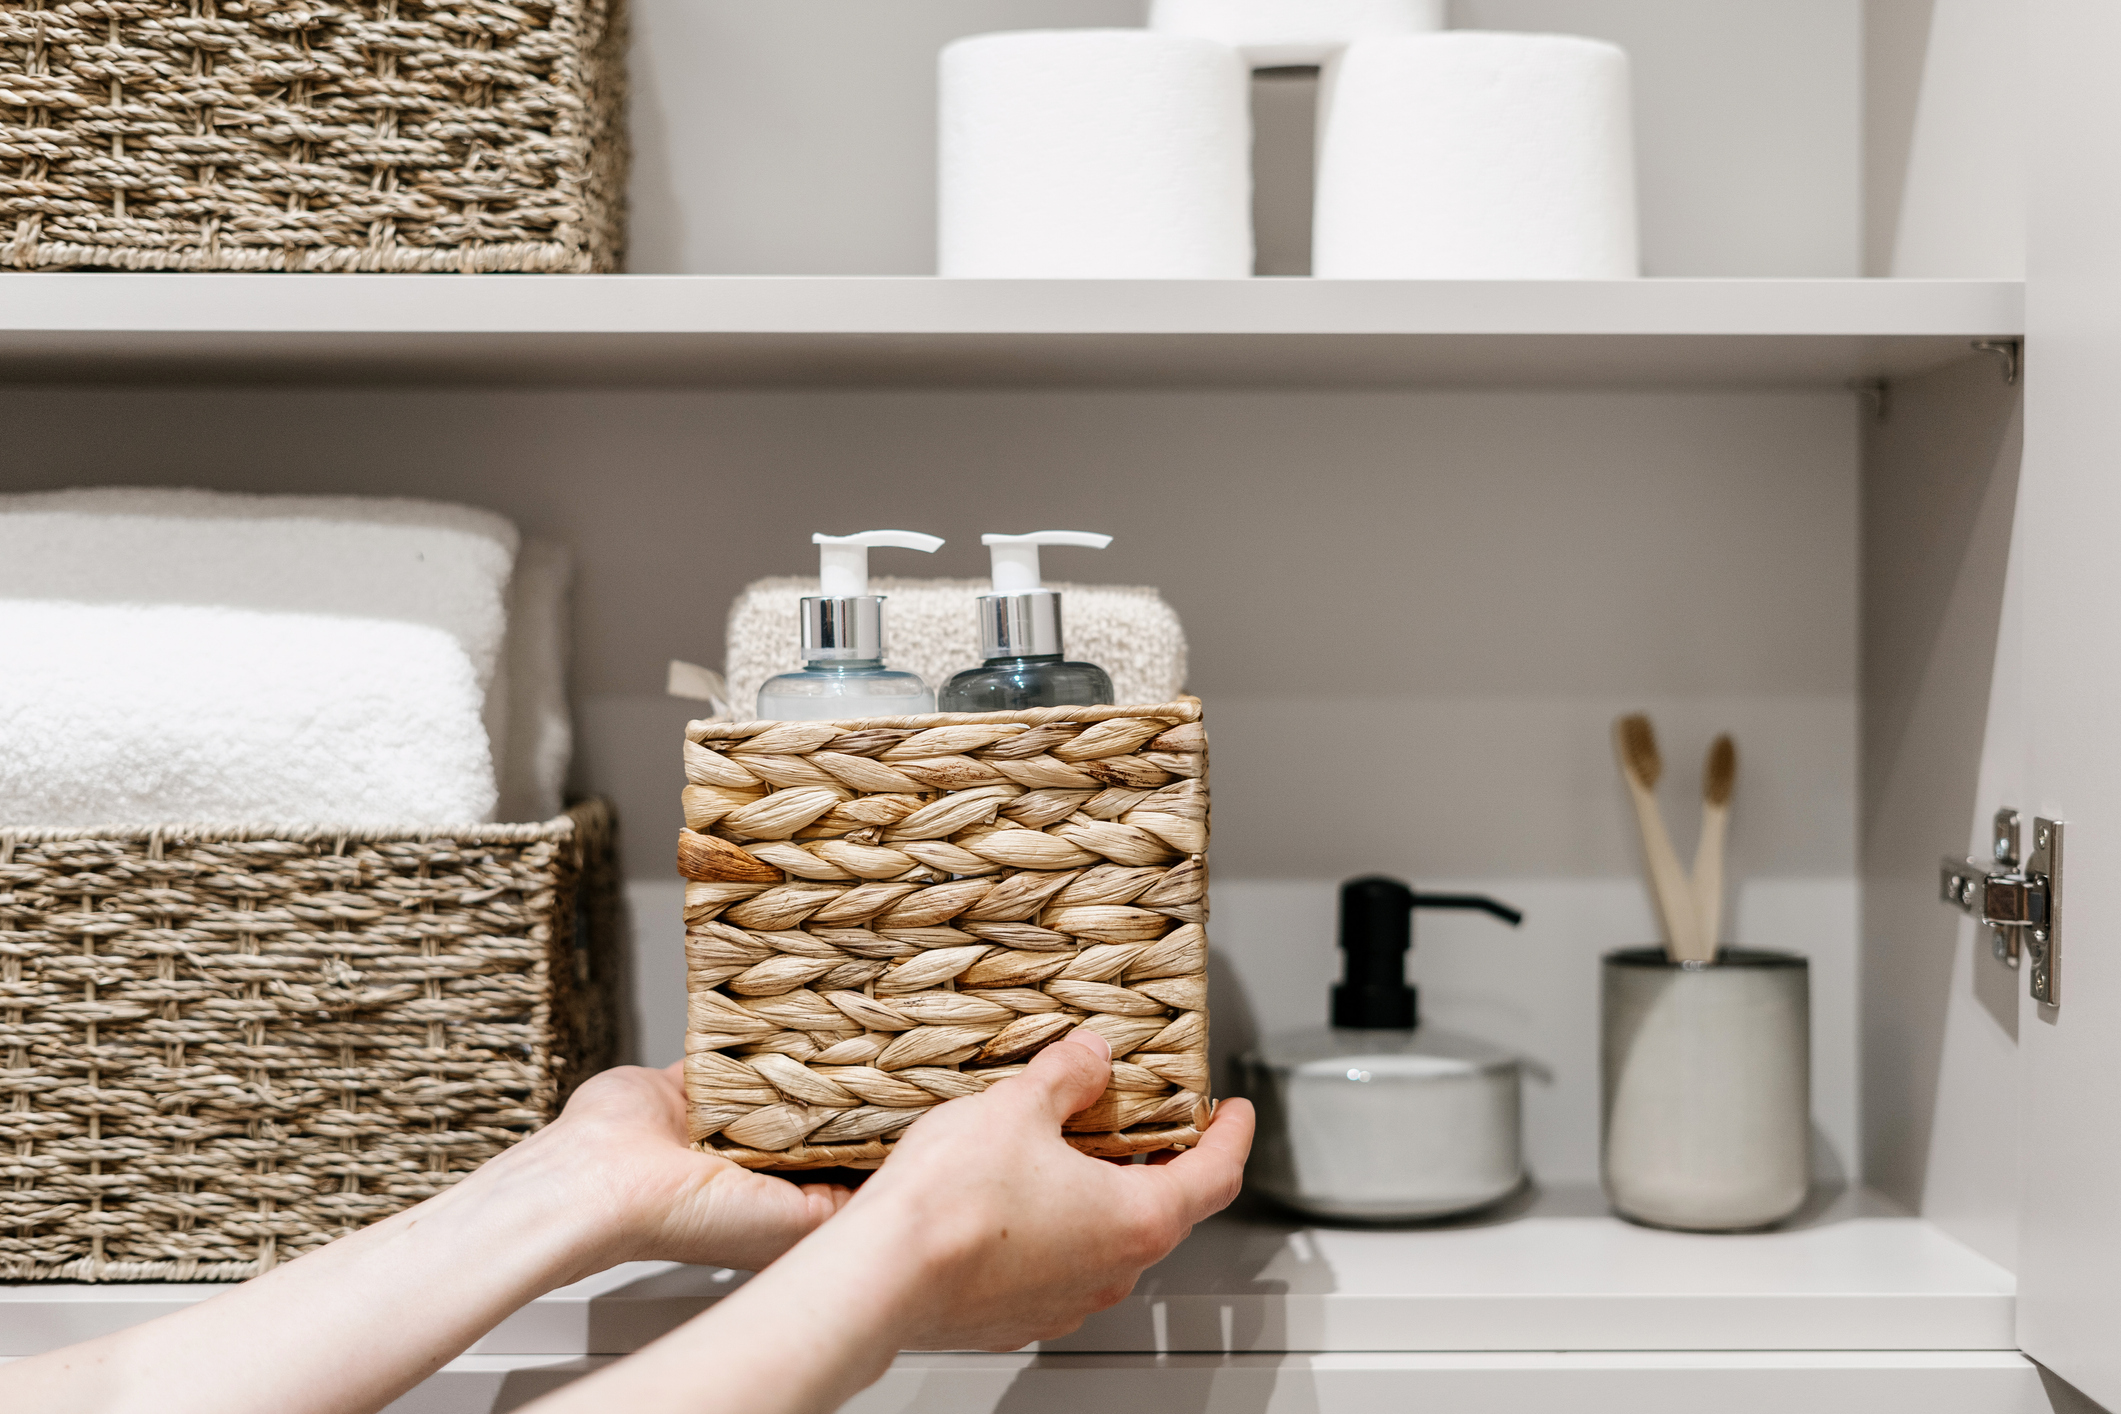 Kupatilska galanterija: Stil i praktičnost u vašem kupatilu